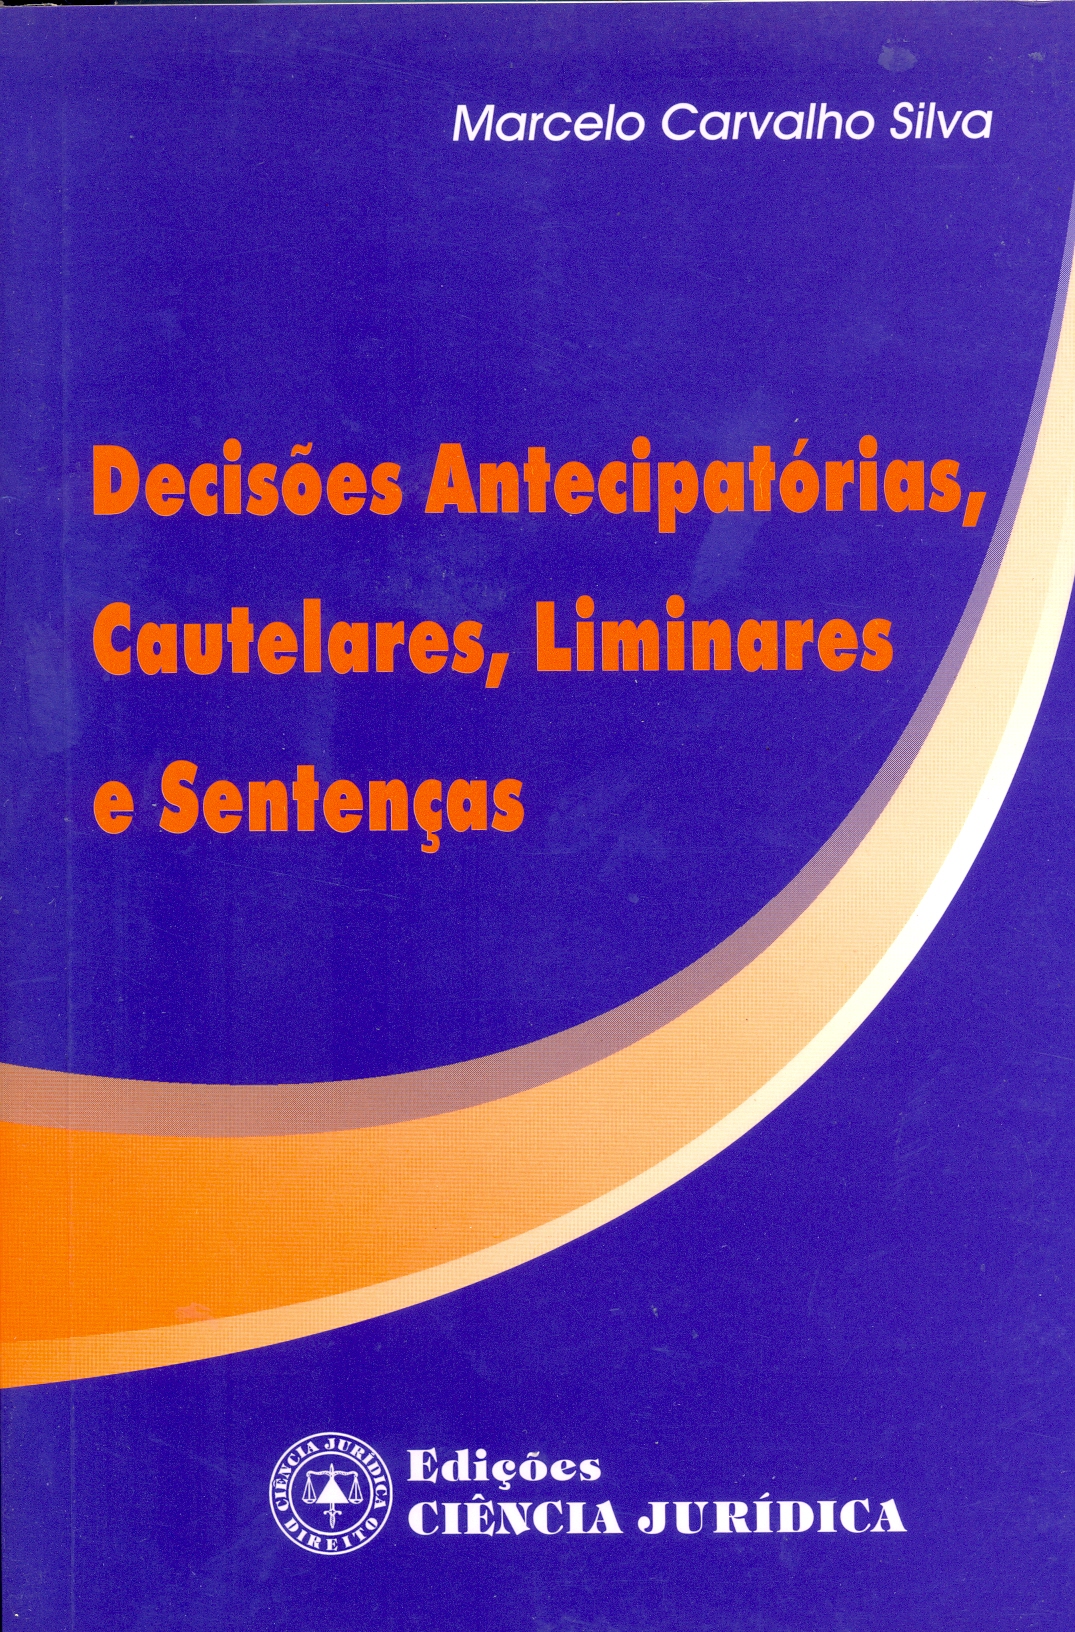 Decisões antecipatórias, cautelares, liminares e sentenças